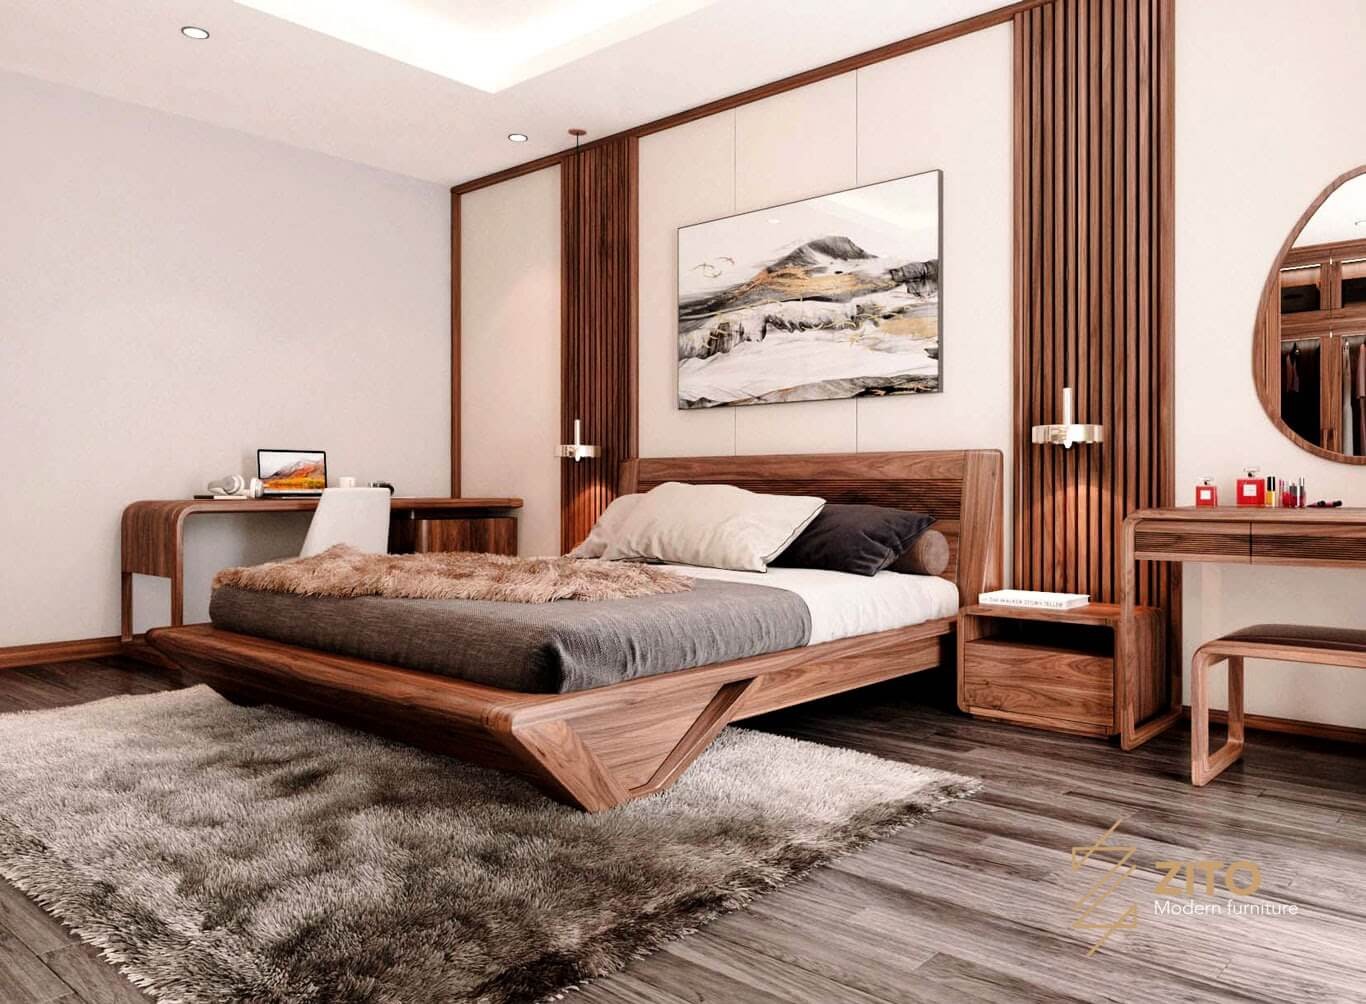 Giường ngủ gỗ tự nhiên